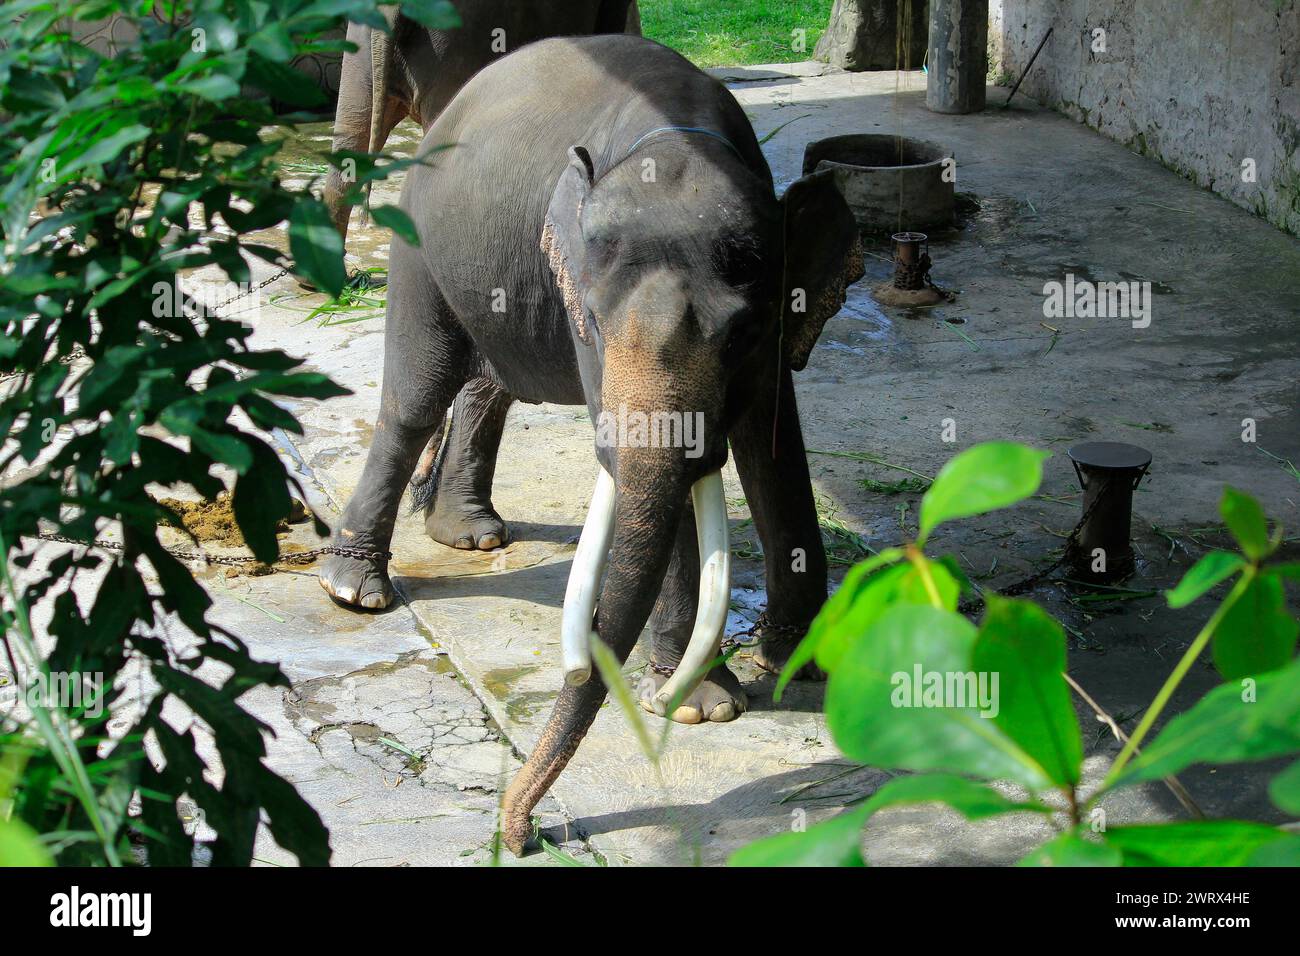 L'elefante di Sumatra (Elephas Maximus sumatrensis), una sottospecie di elefante asiatico, è relativamente più piccolo, ha i piedi incatenati ed è in cattive condizioni. Foto Stock